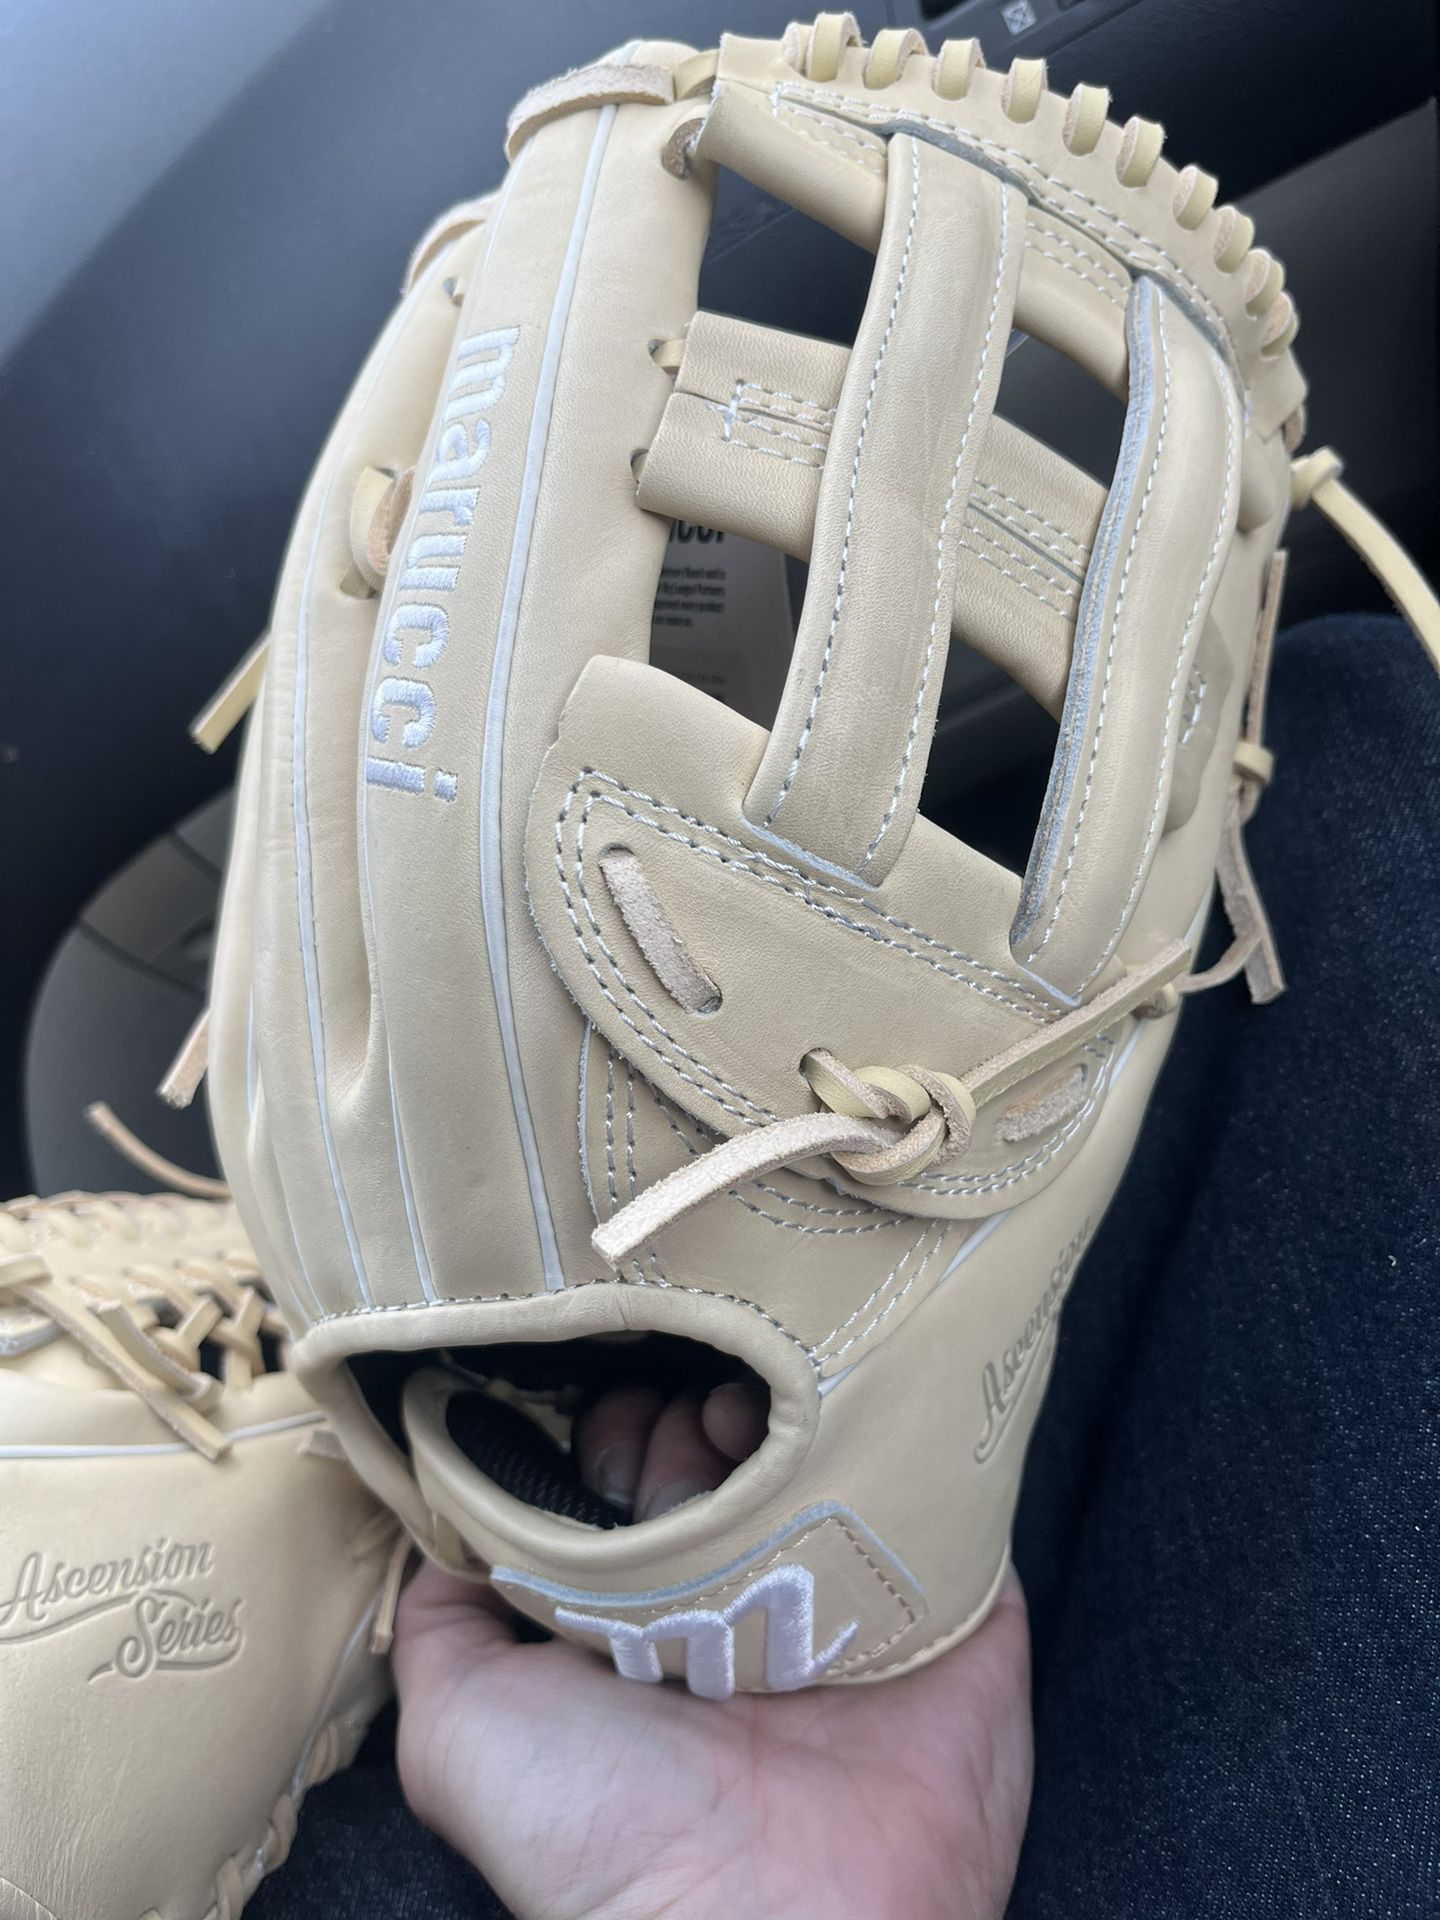 Marucci baseball glove